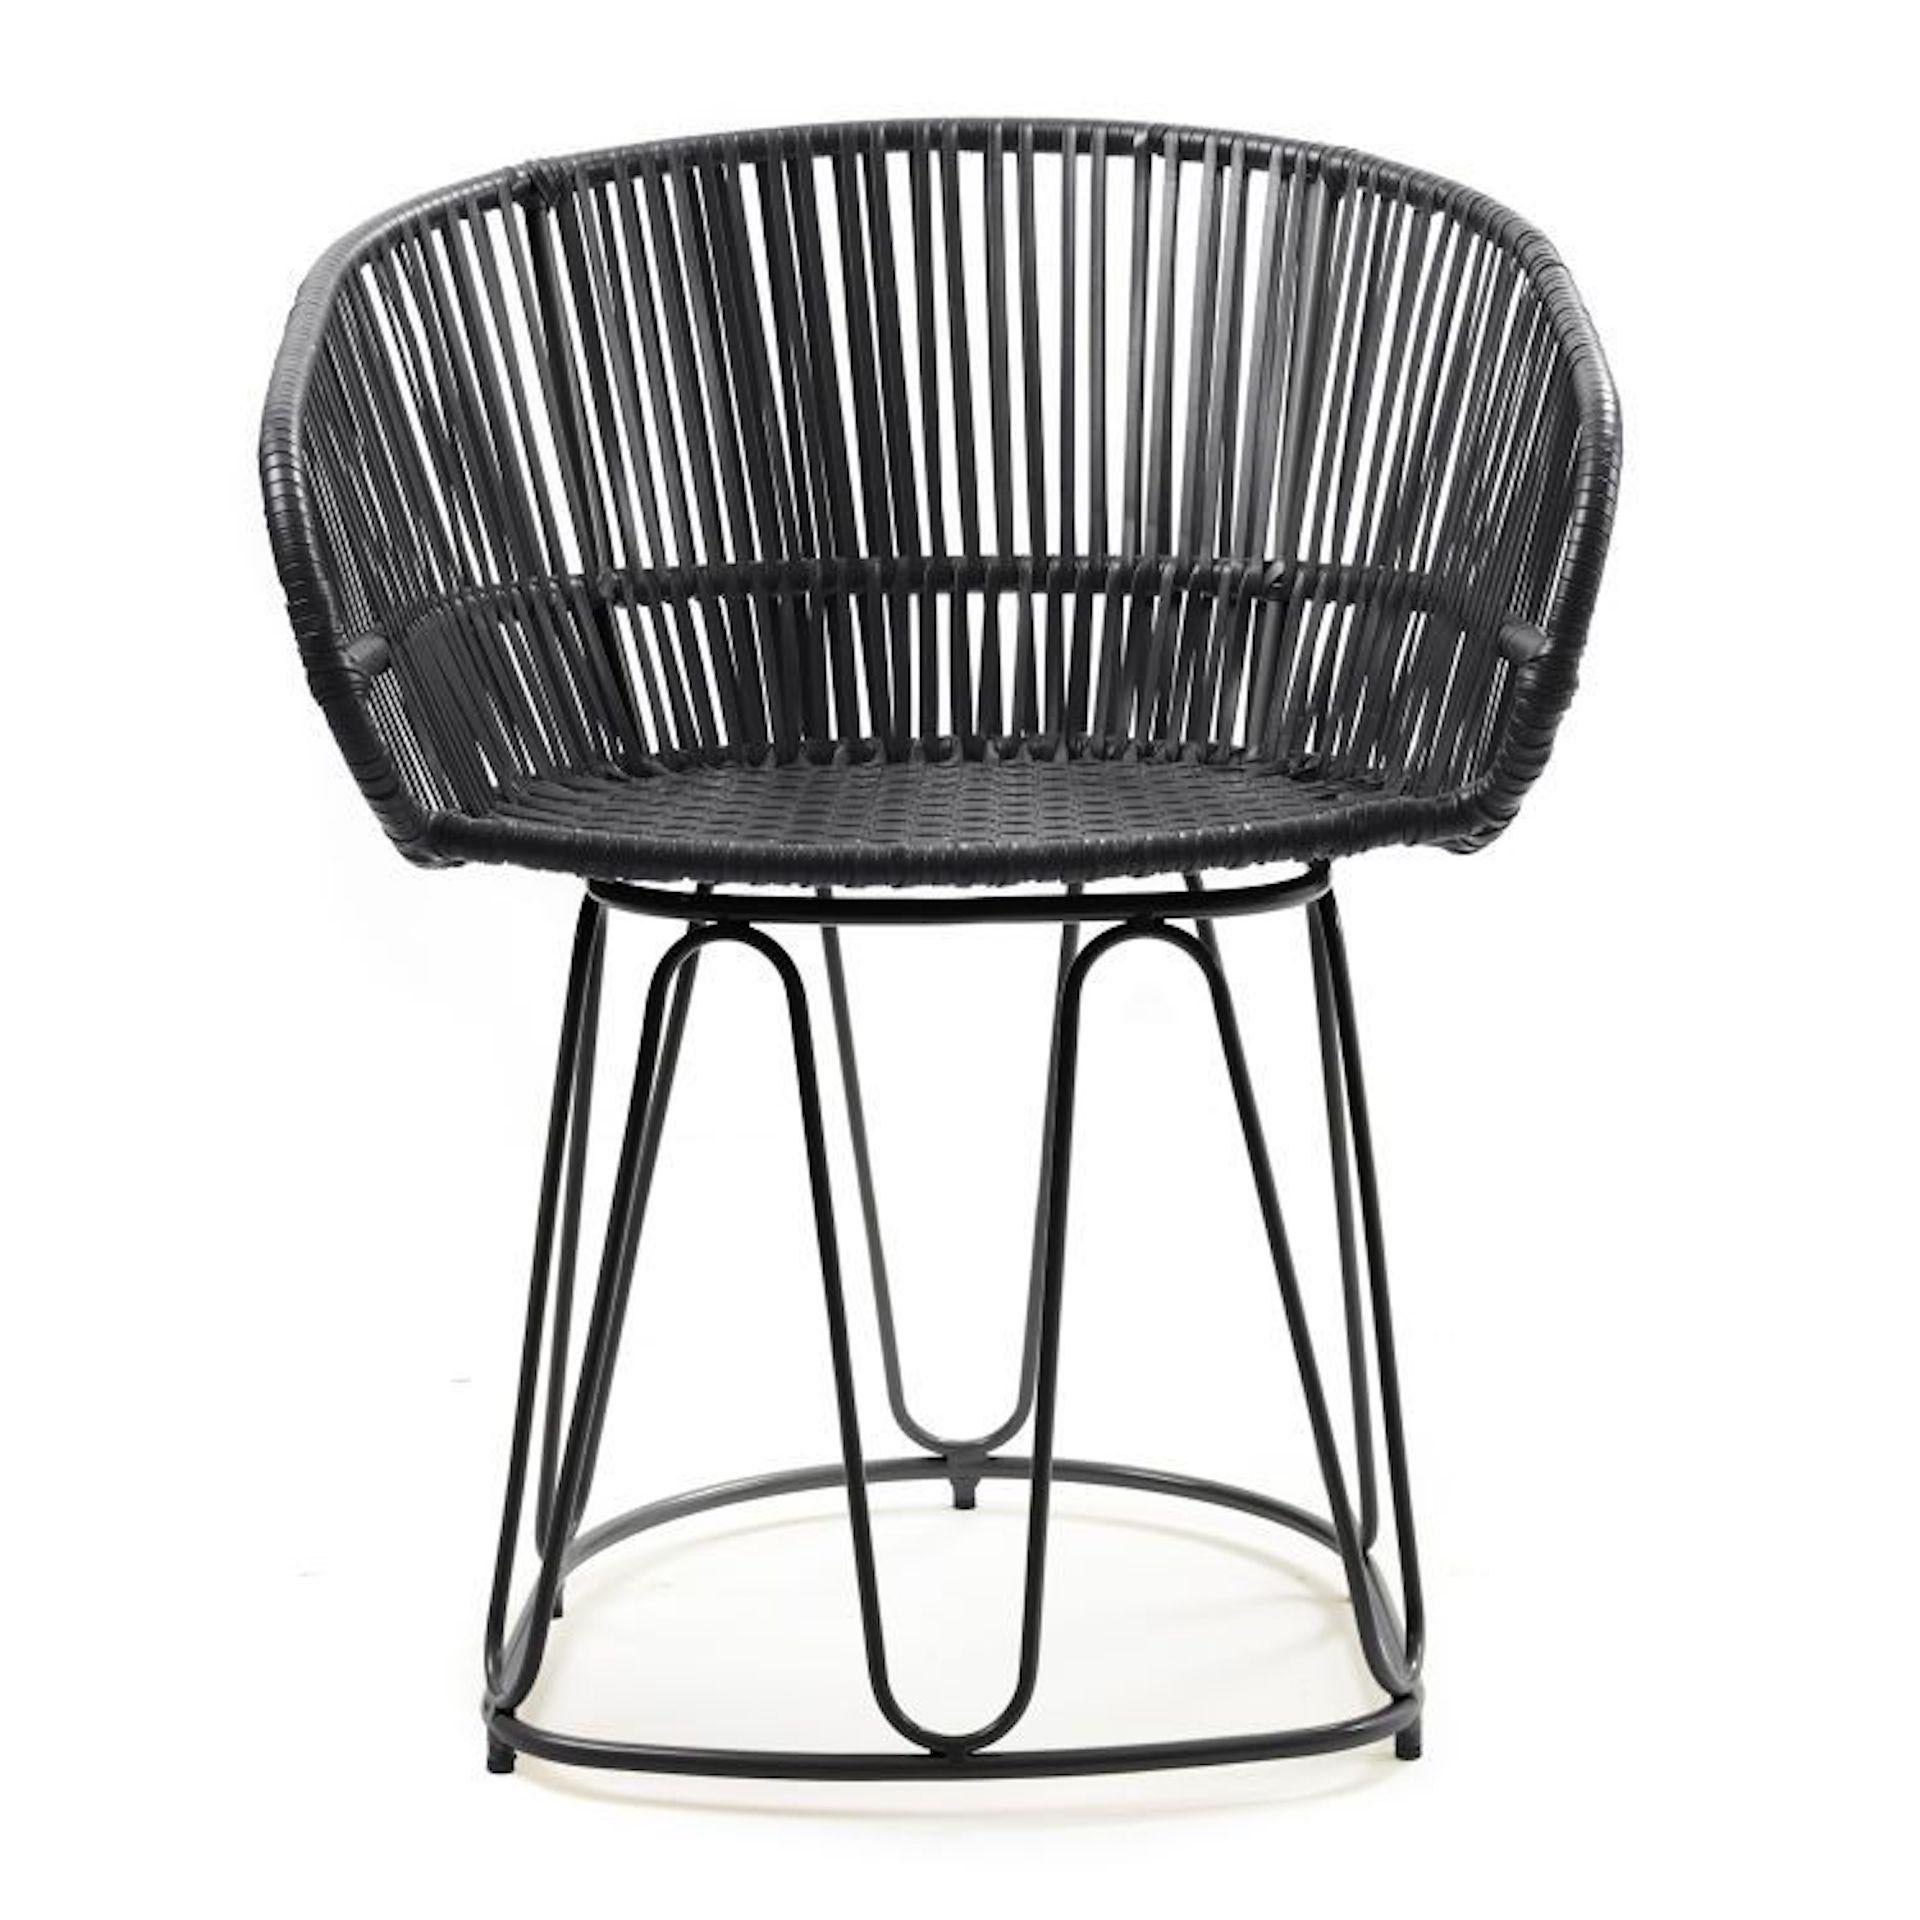 Dotée de courbes douces et d'une sangle complexe, la chaise de salle à manger Circo en cuir ajoute une touche d'élégance colorée aux espaces intérieurs. Conçue par Sebastian Herkner, cette chaise confortable et légère reflète le dynamisme et